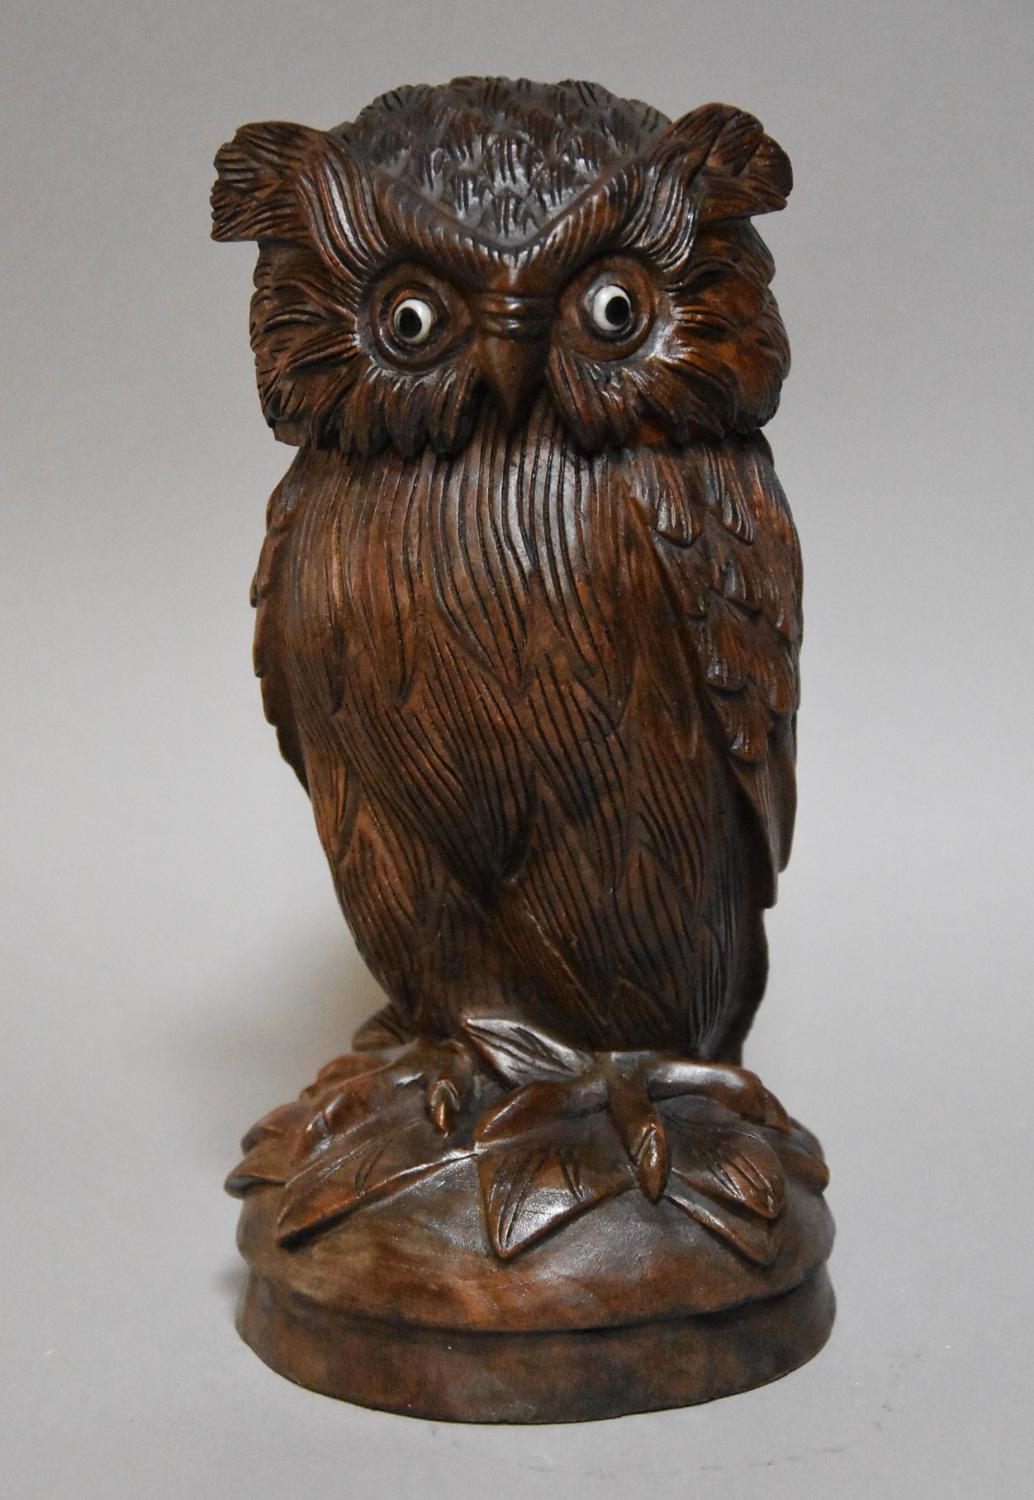 Black Forest carved jar of an owl